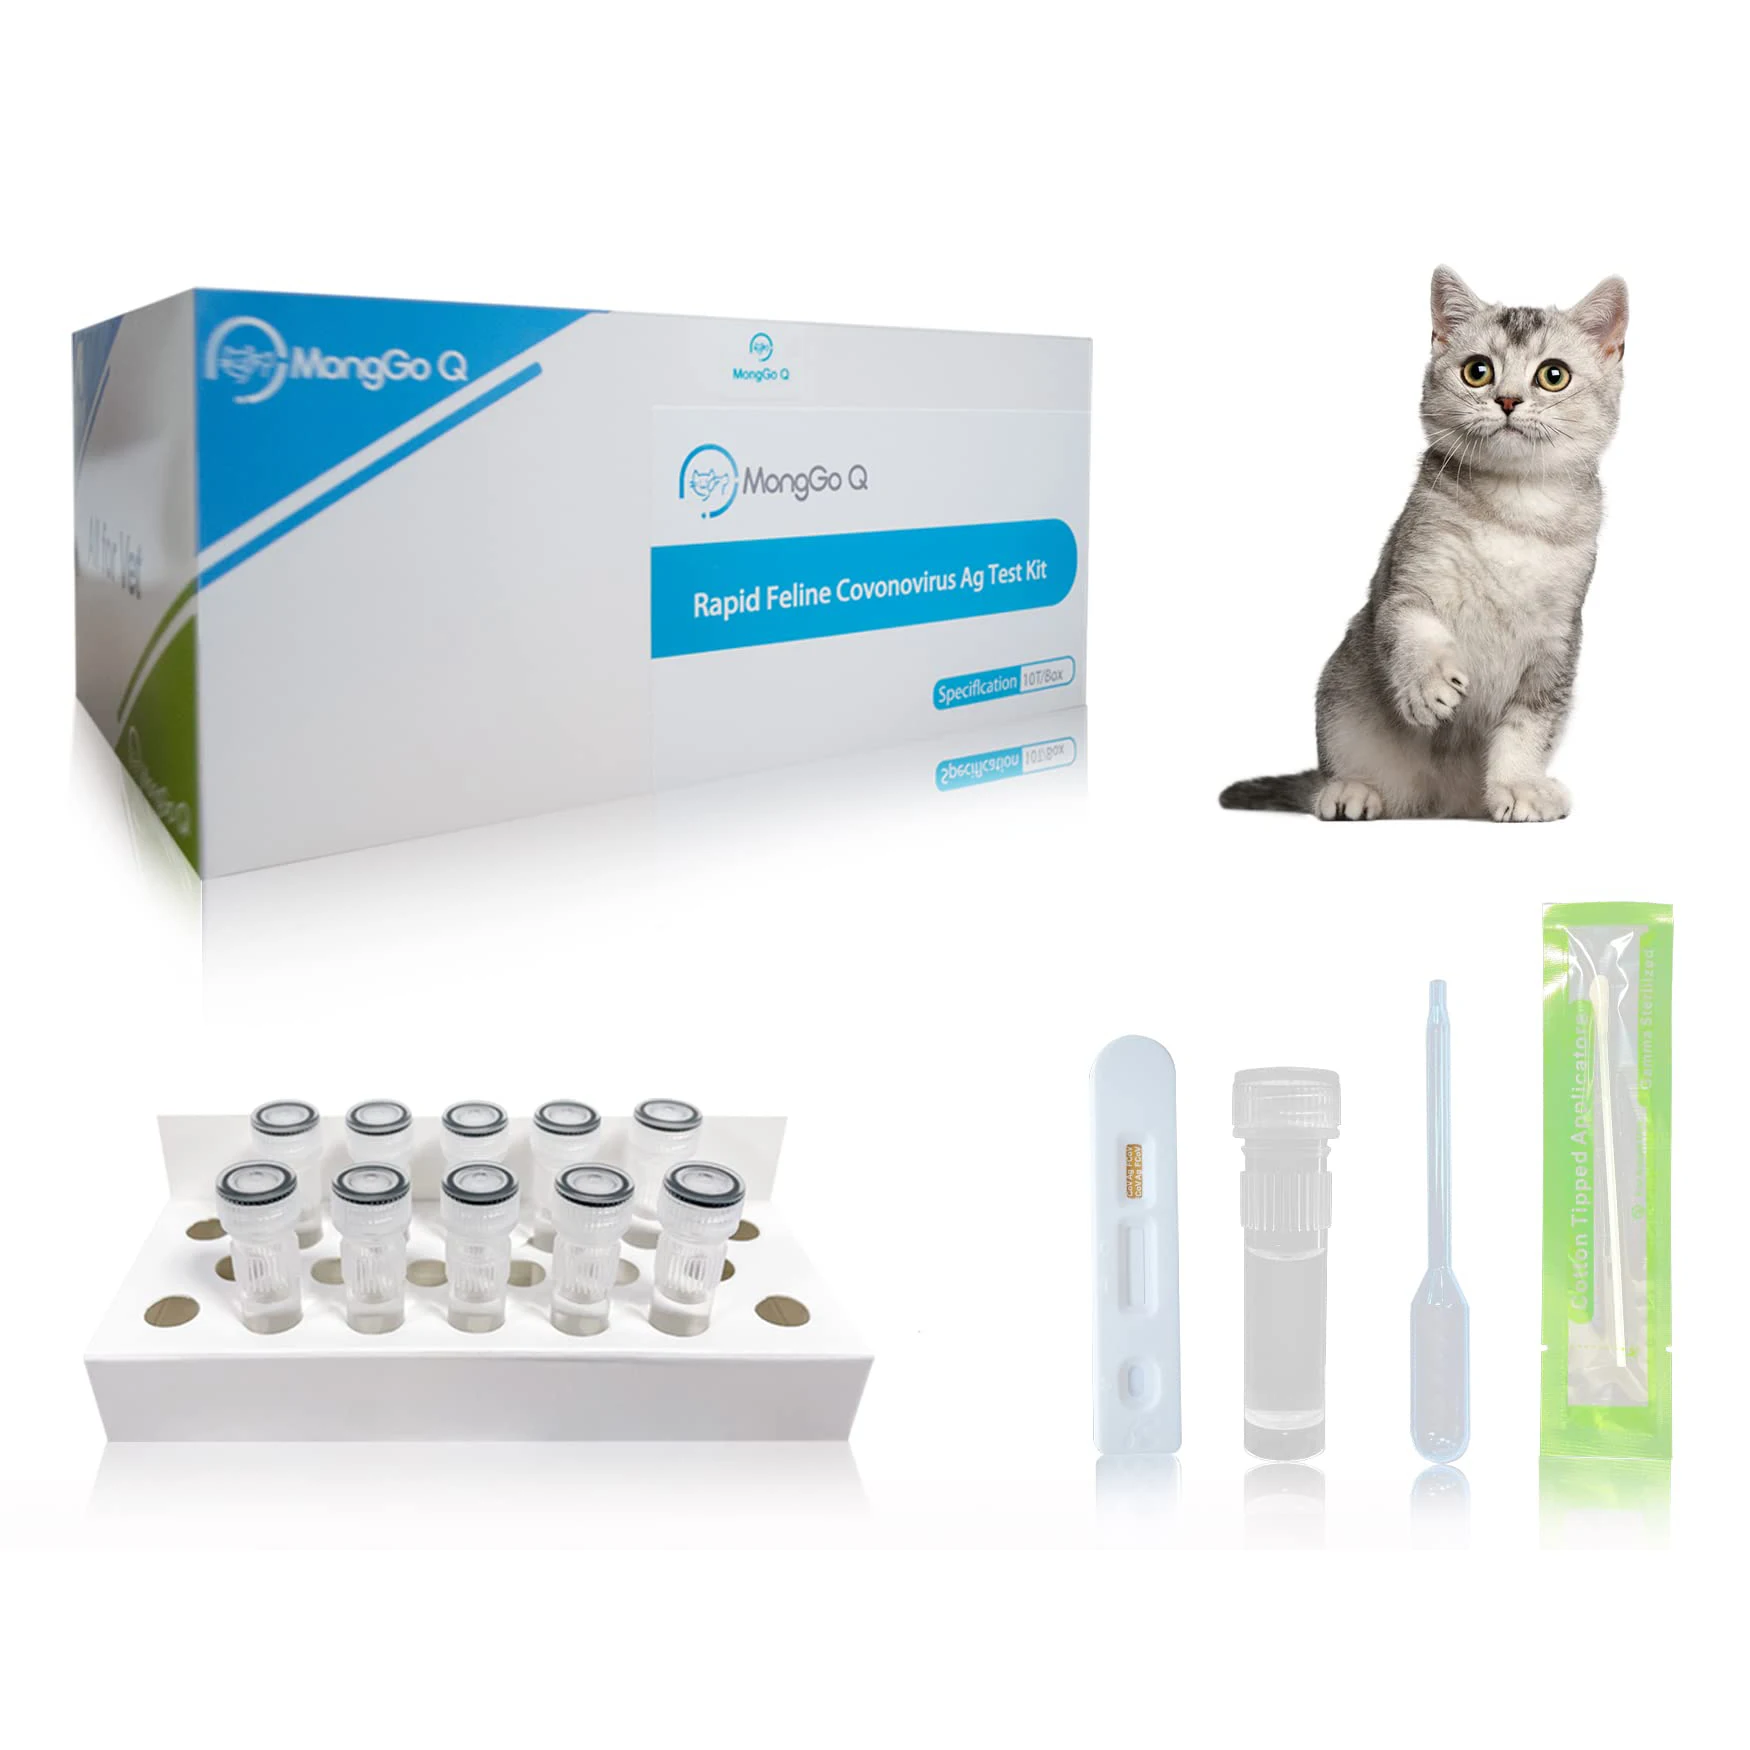 MongGo Q Rapid FCOV Ag-Kit de prueba de heces felinas para gatos, detección de heces felinas (paquete de 10)